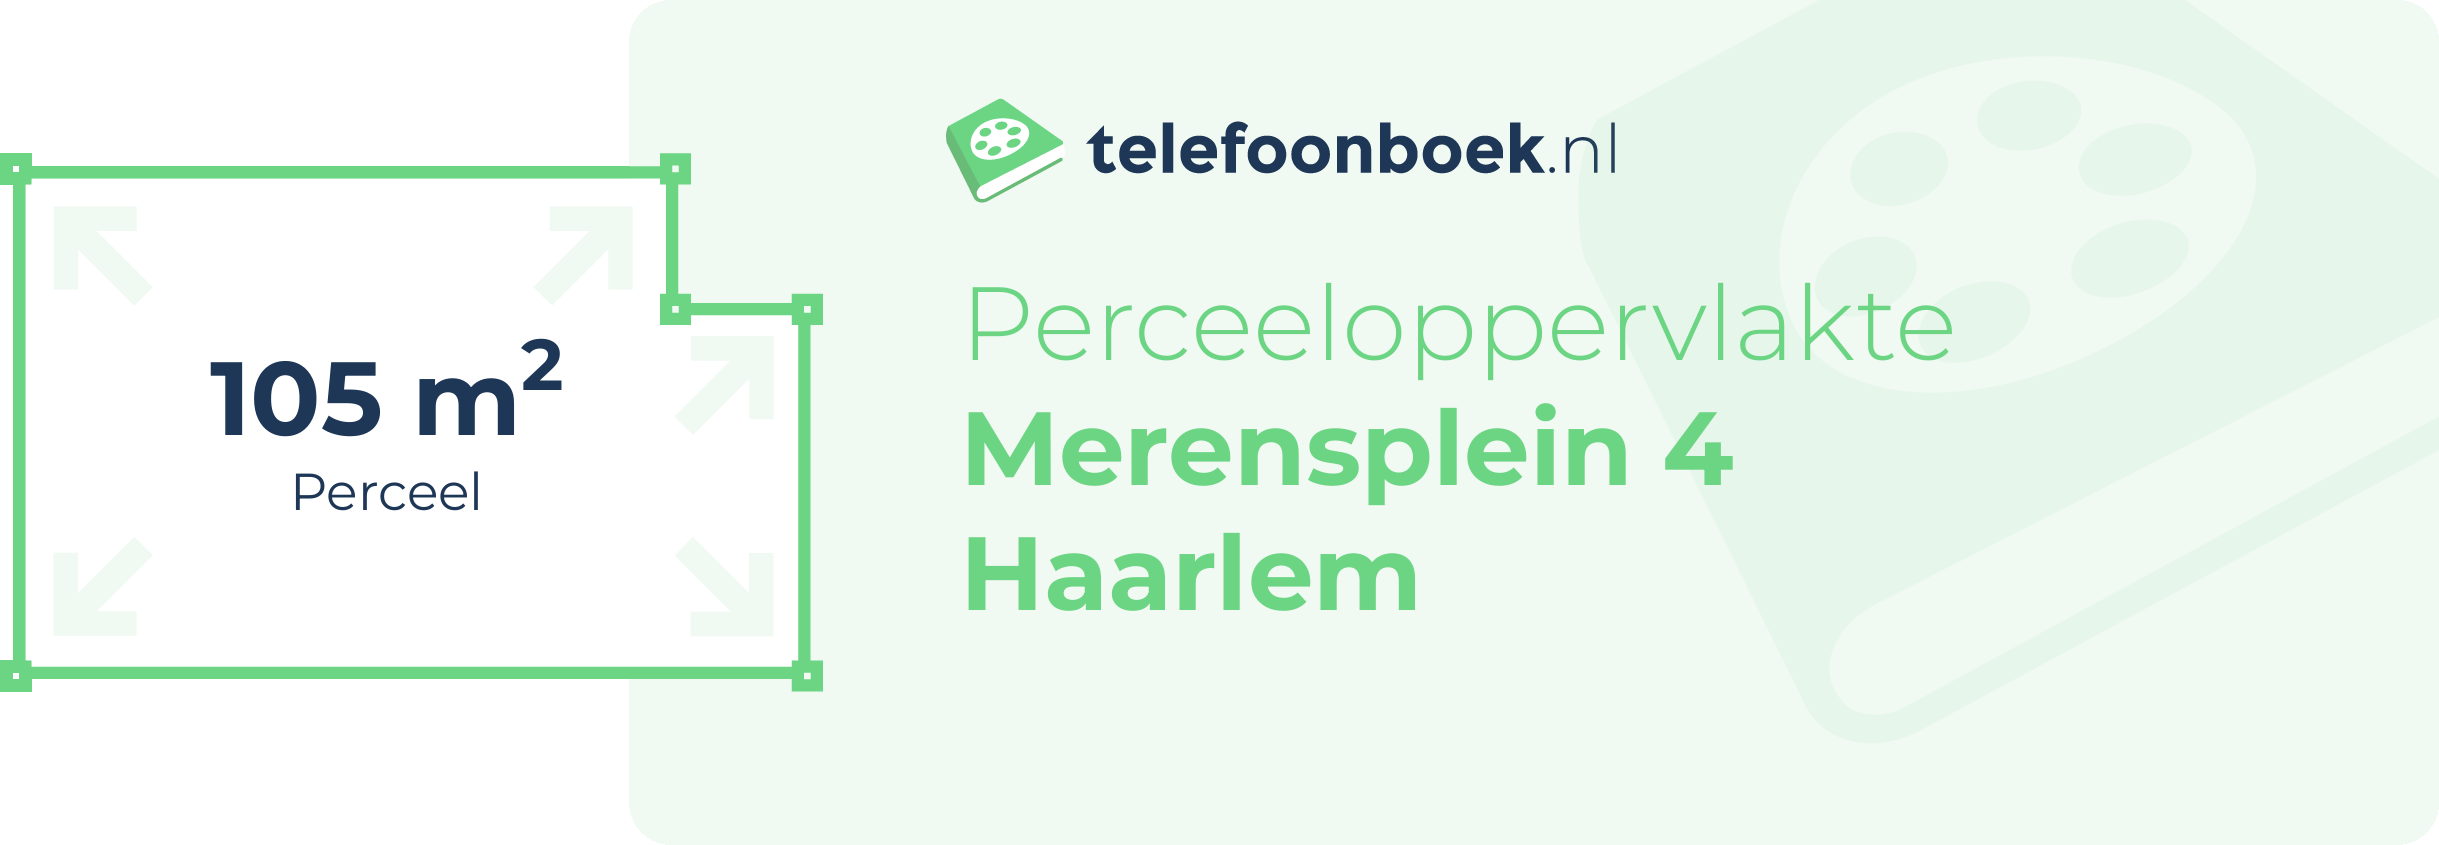 Perceeloppervlakte Merensplein 4 Haarlem